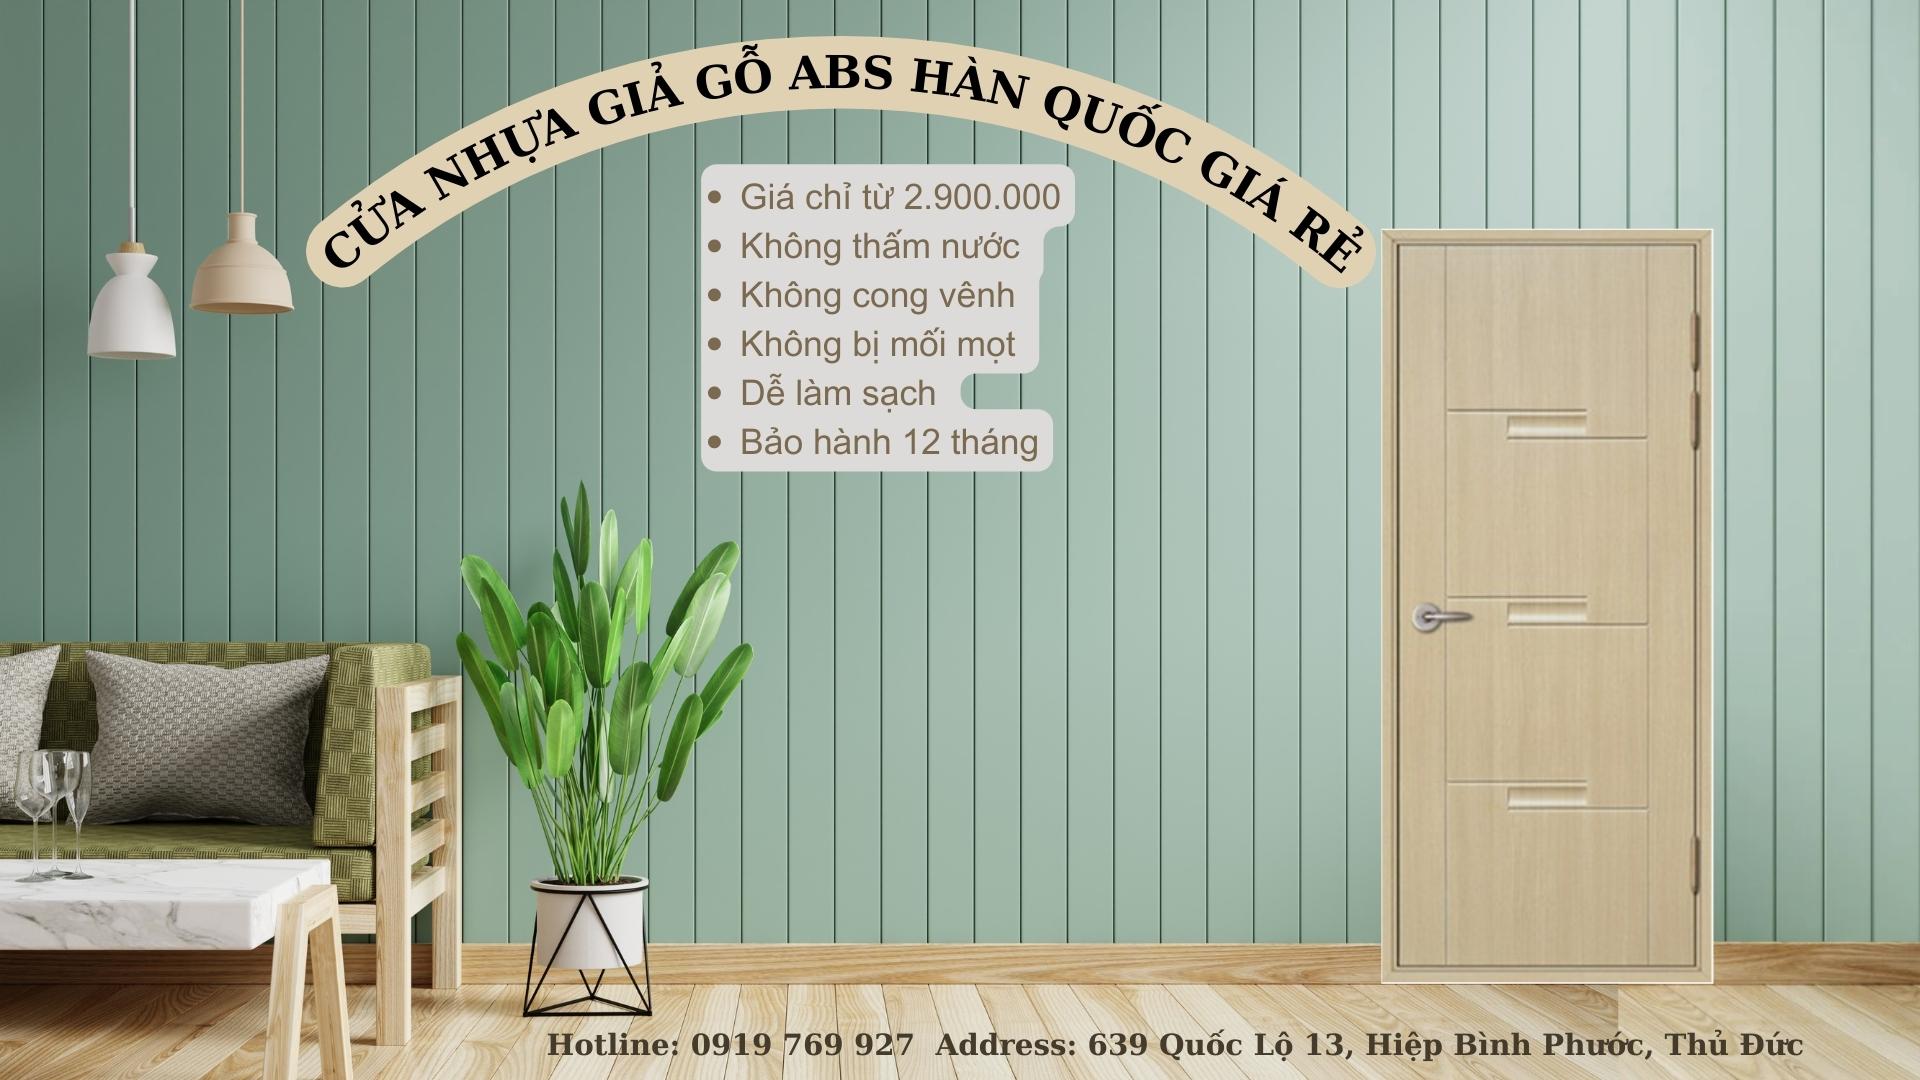 Toàn quốc - Cửa nhựa giả gỗ abs hàn quốc giá rẻ cho phòng ngủ, phòng tắm Abstract-Photo-Aesthetic-Quote-Desktop-Wallpaper-3